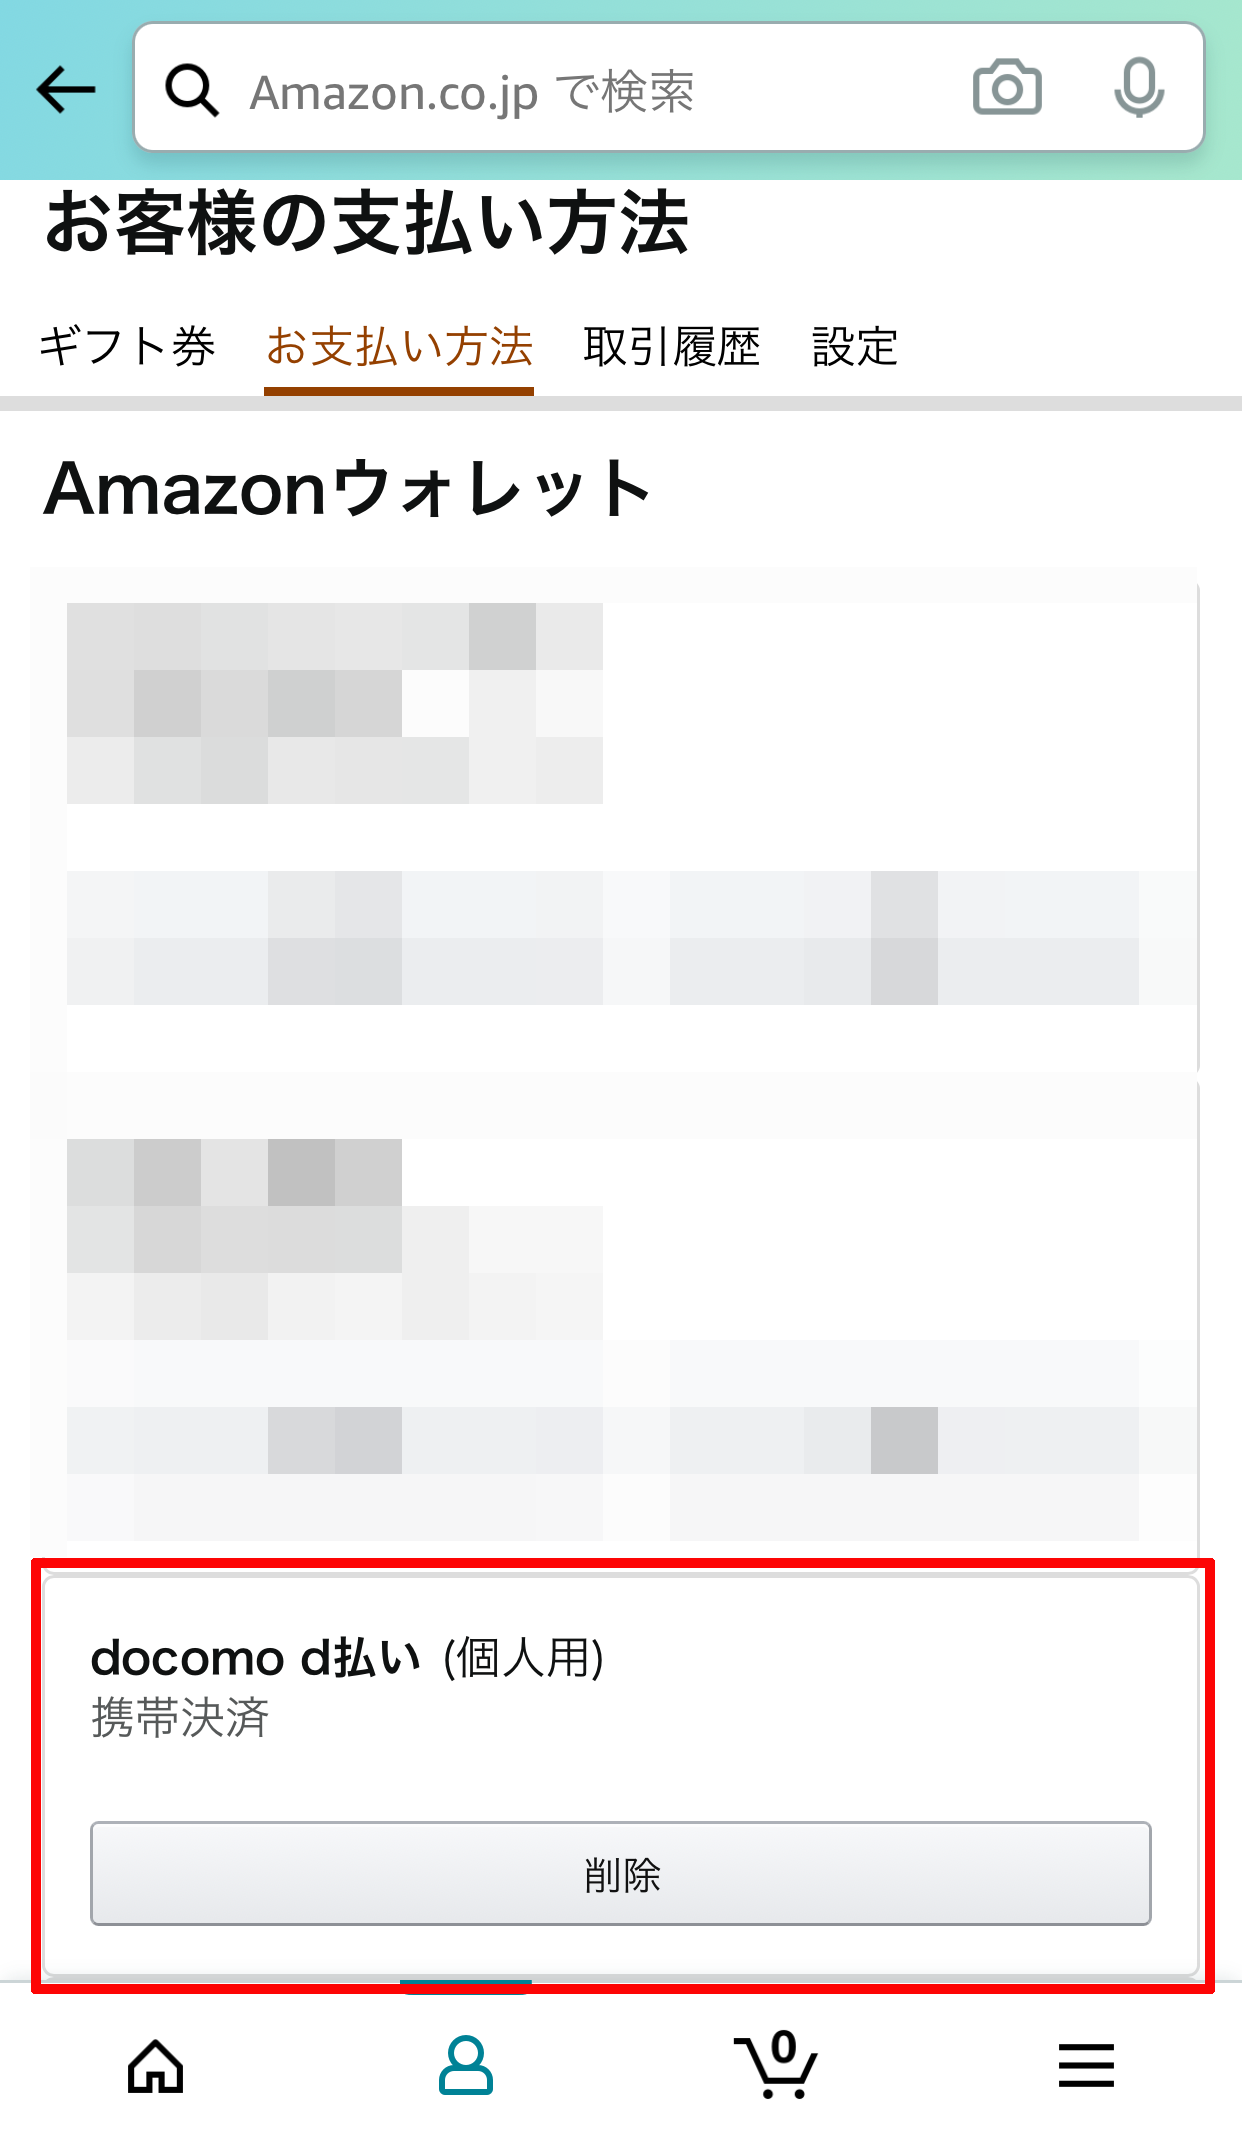 「お支払い方法」に「docomo d払い（個人用）」が追加されていれば、Amazonでd払いをするための設定は完了